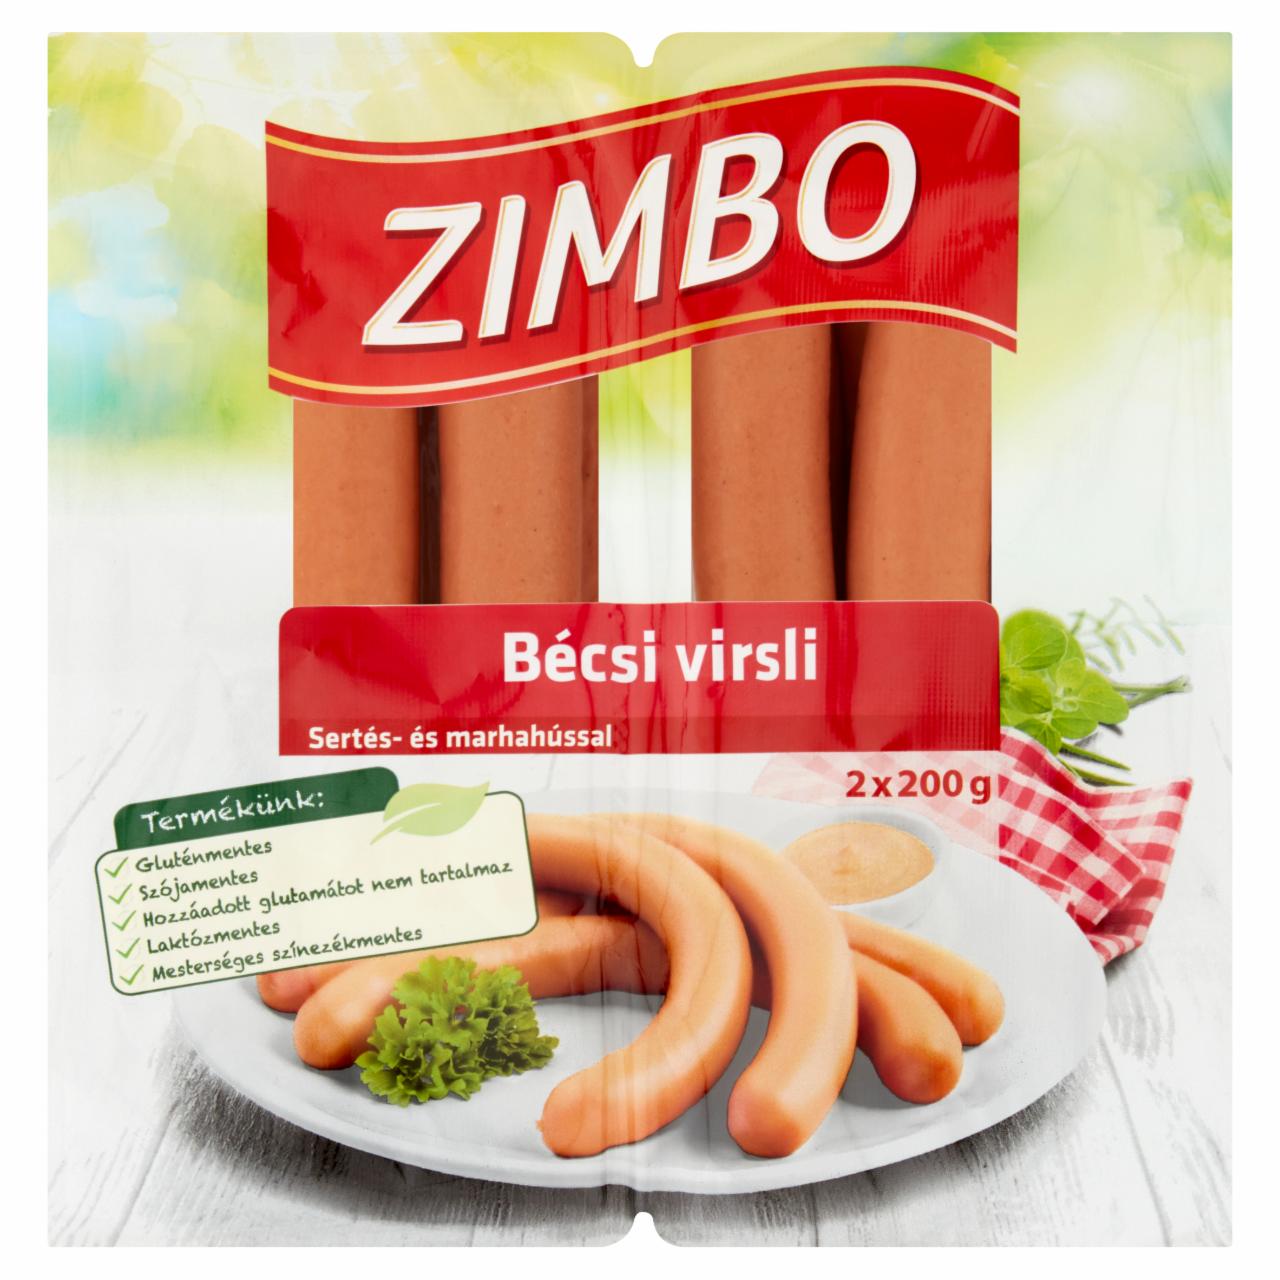 Képek - Zimbo bécsi virsli sertés és marhahúsból 2 x 200 g (400 g)